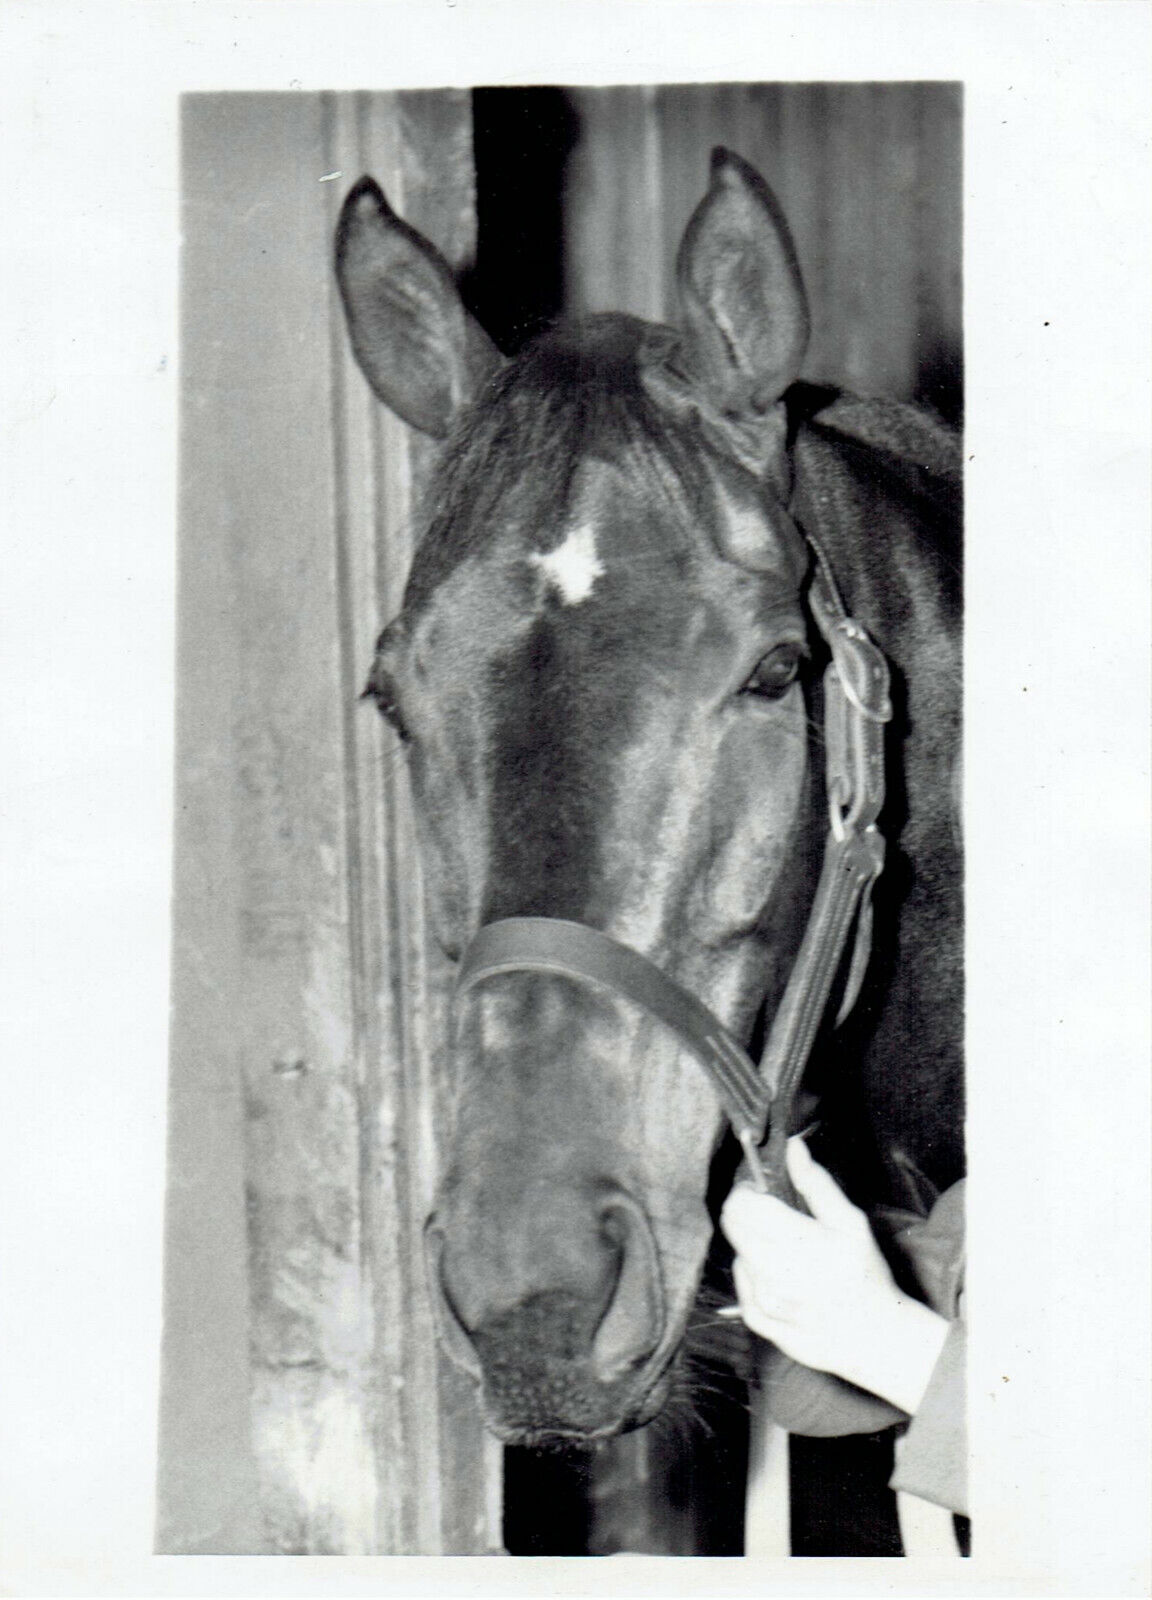 1947 Press Photo Handicap Racehorse Champ Armed races Assualt at Washington Park